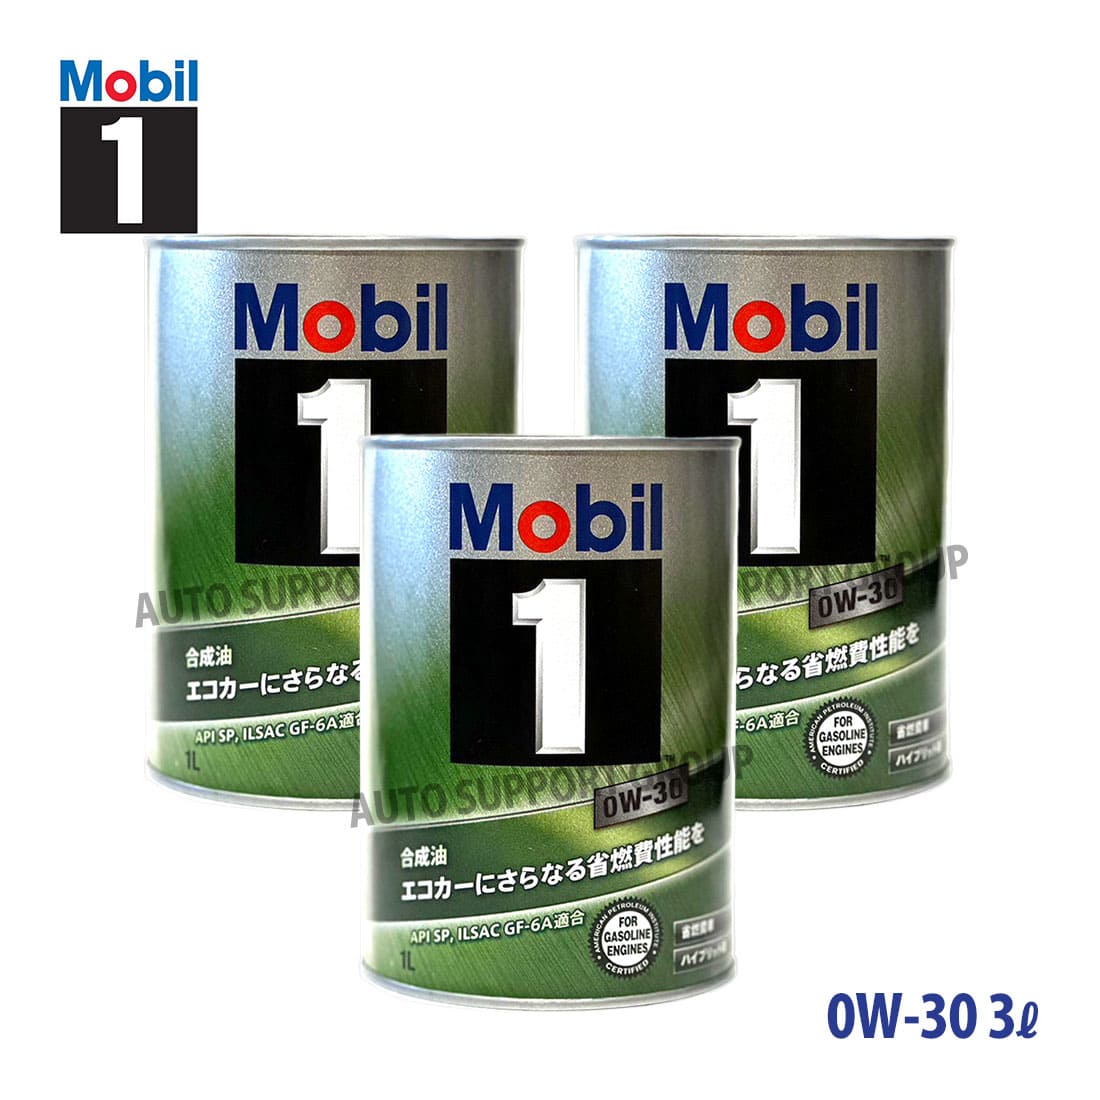 エンジンオイル 0W-30 SP Mobil1 モービル1 3L (3リットル) セット  :ys-mob1010149-2305-10003:オートサポートグループ5号店 通販 